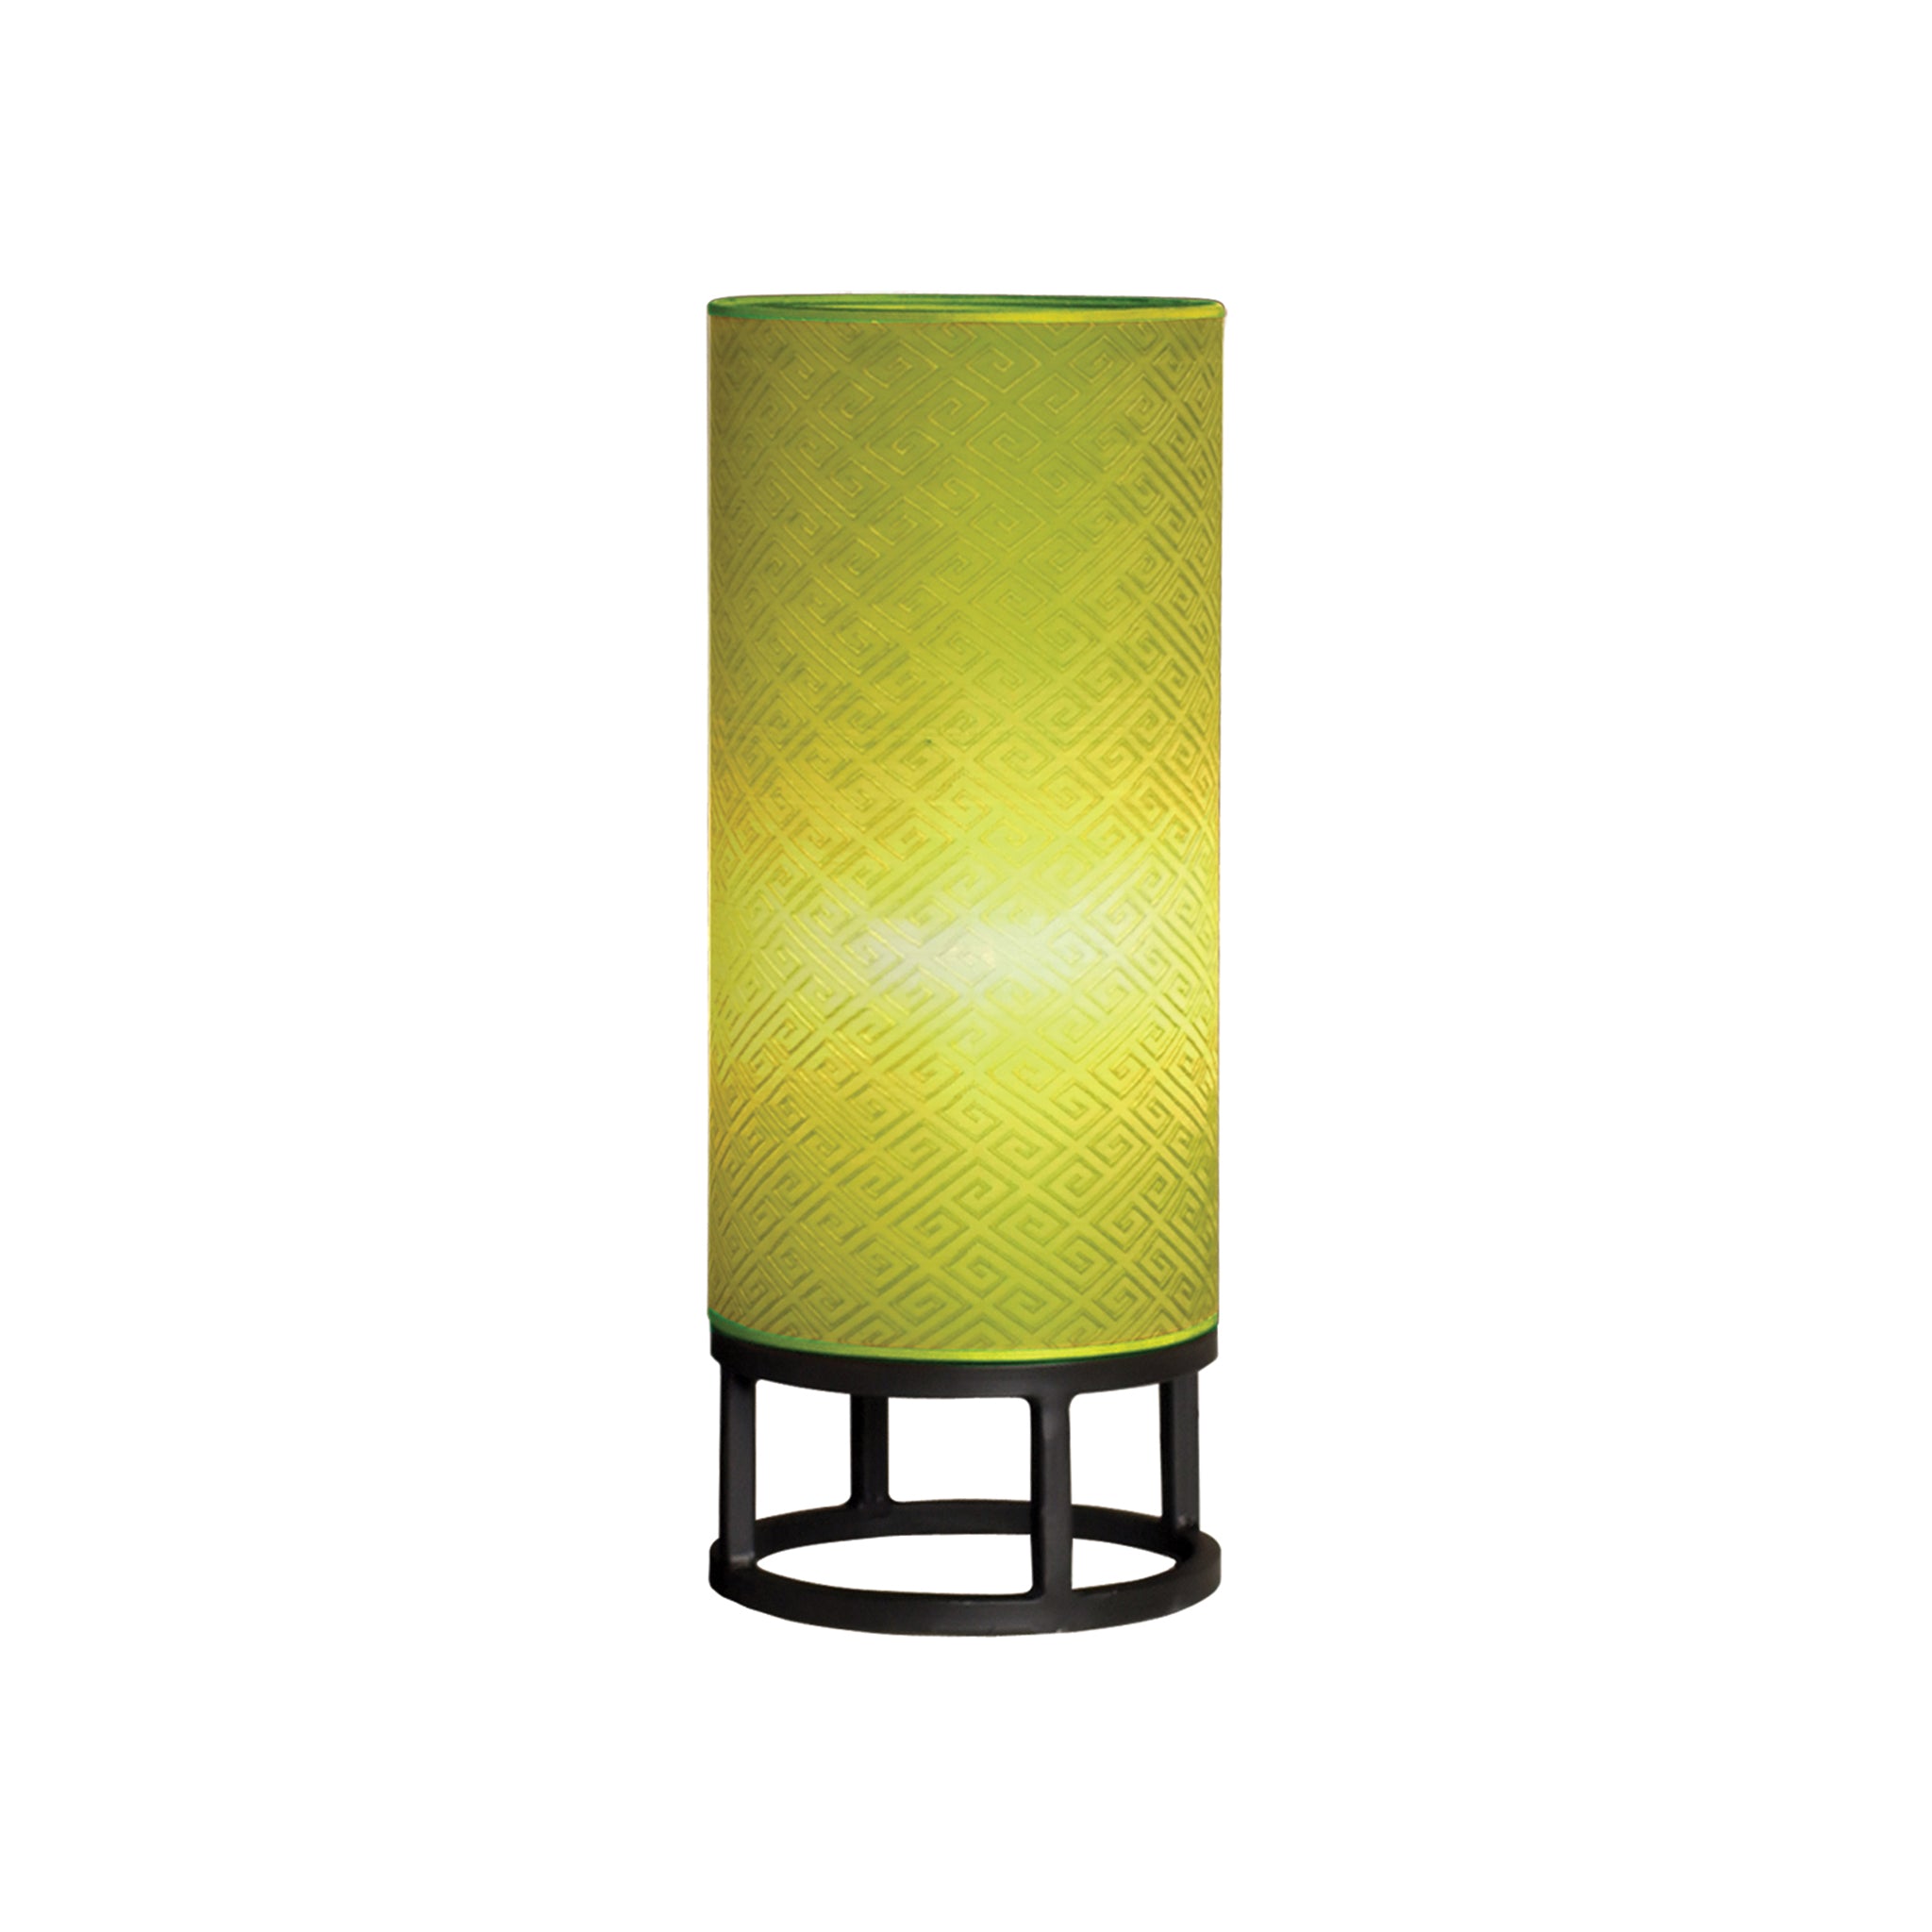 Renhuai Cylinder Lantern